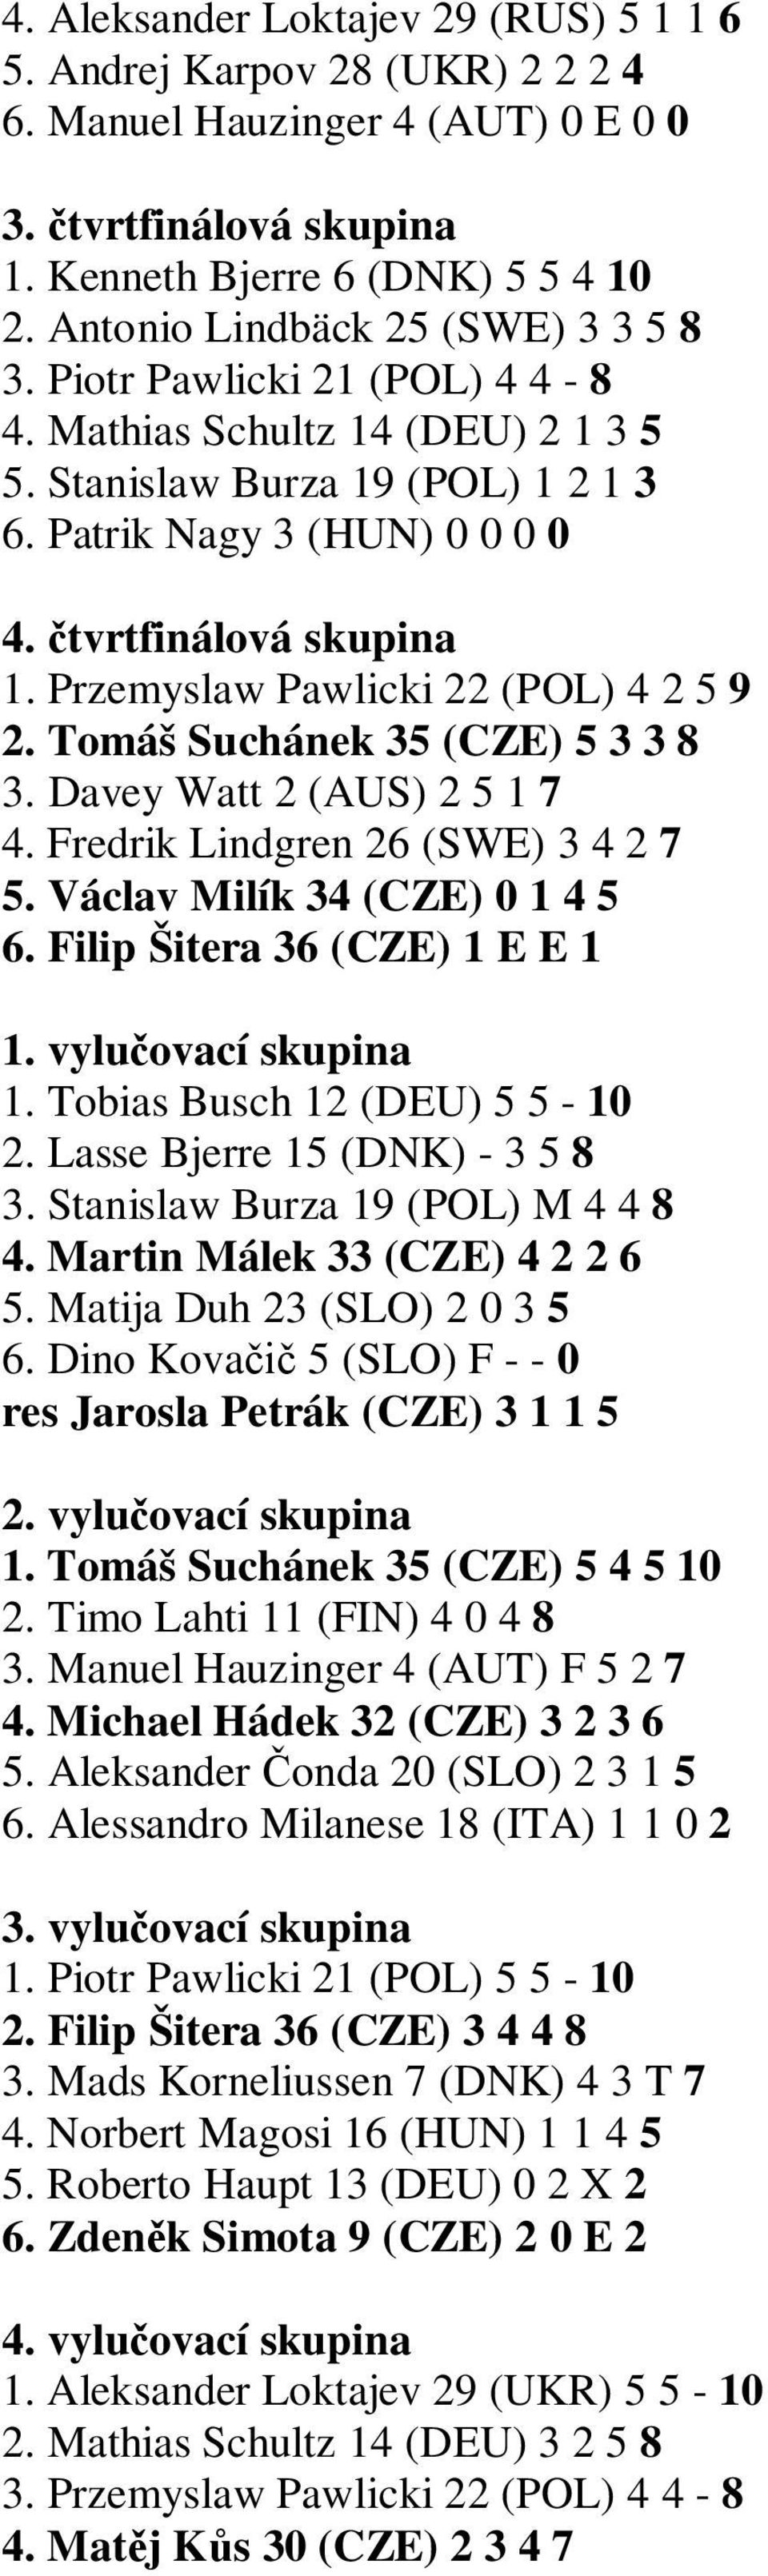 Przemyslaw Pawlicki 22 (POL) 4 2 5 9 2. Tomáš Suchánek 35 (CZE) 5 3 3 8 3. Davey Watt 2 (AUS) 2 5 1 7 4. Fredrik Lindgren 26 (SWE) 3 4 2 7 5. Václav Milík 34 (CZE) 0 1 4 5 6.